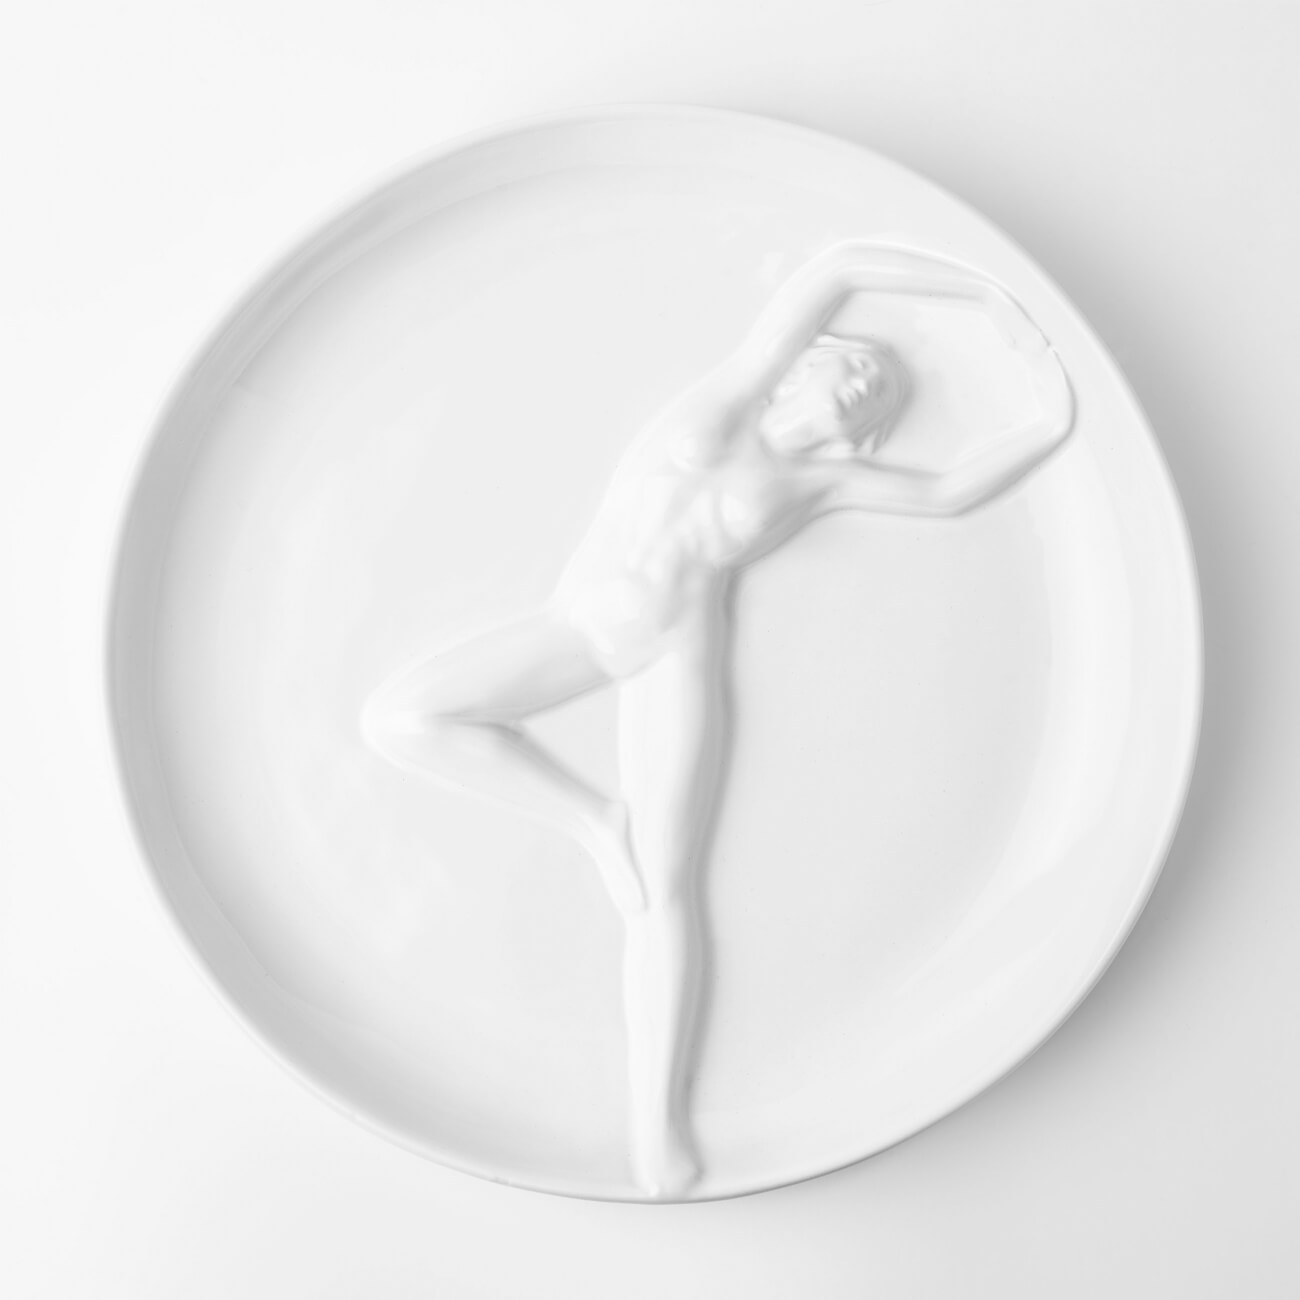 Блюдо, 24 см, керамика, белое, Женщина, Face блюдо 24 см керамика белое лицо face